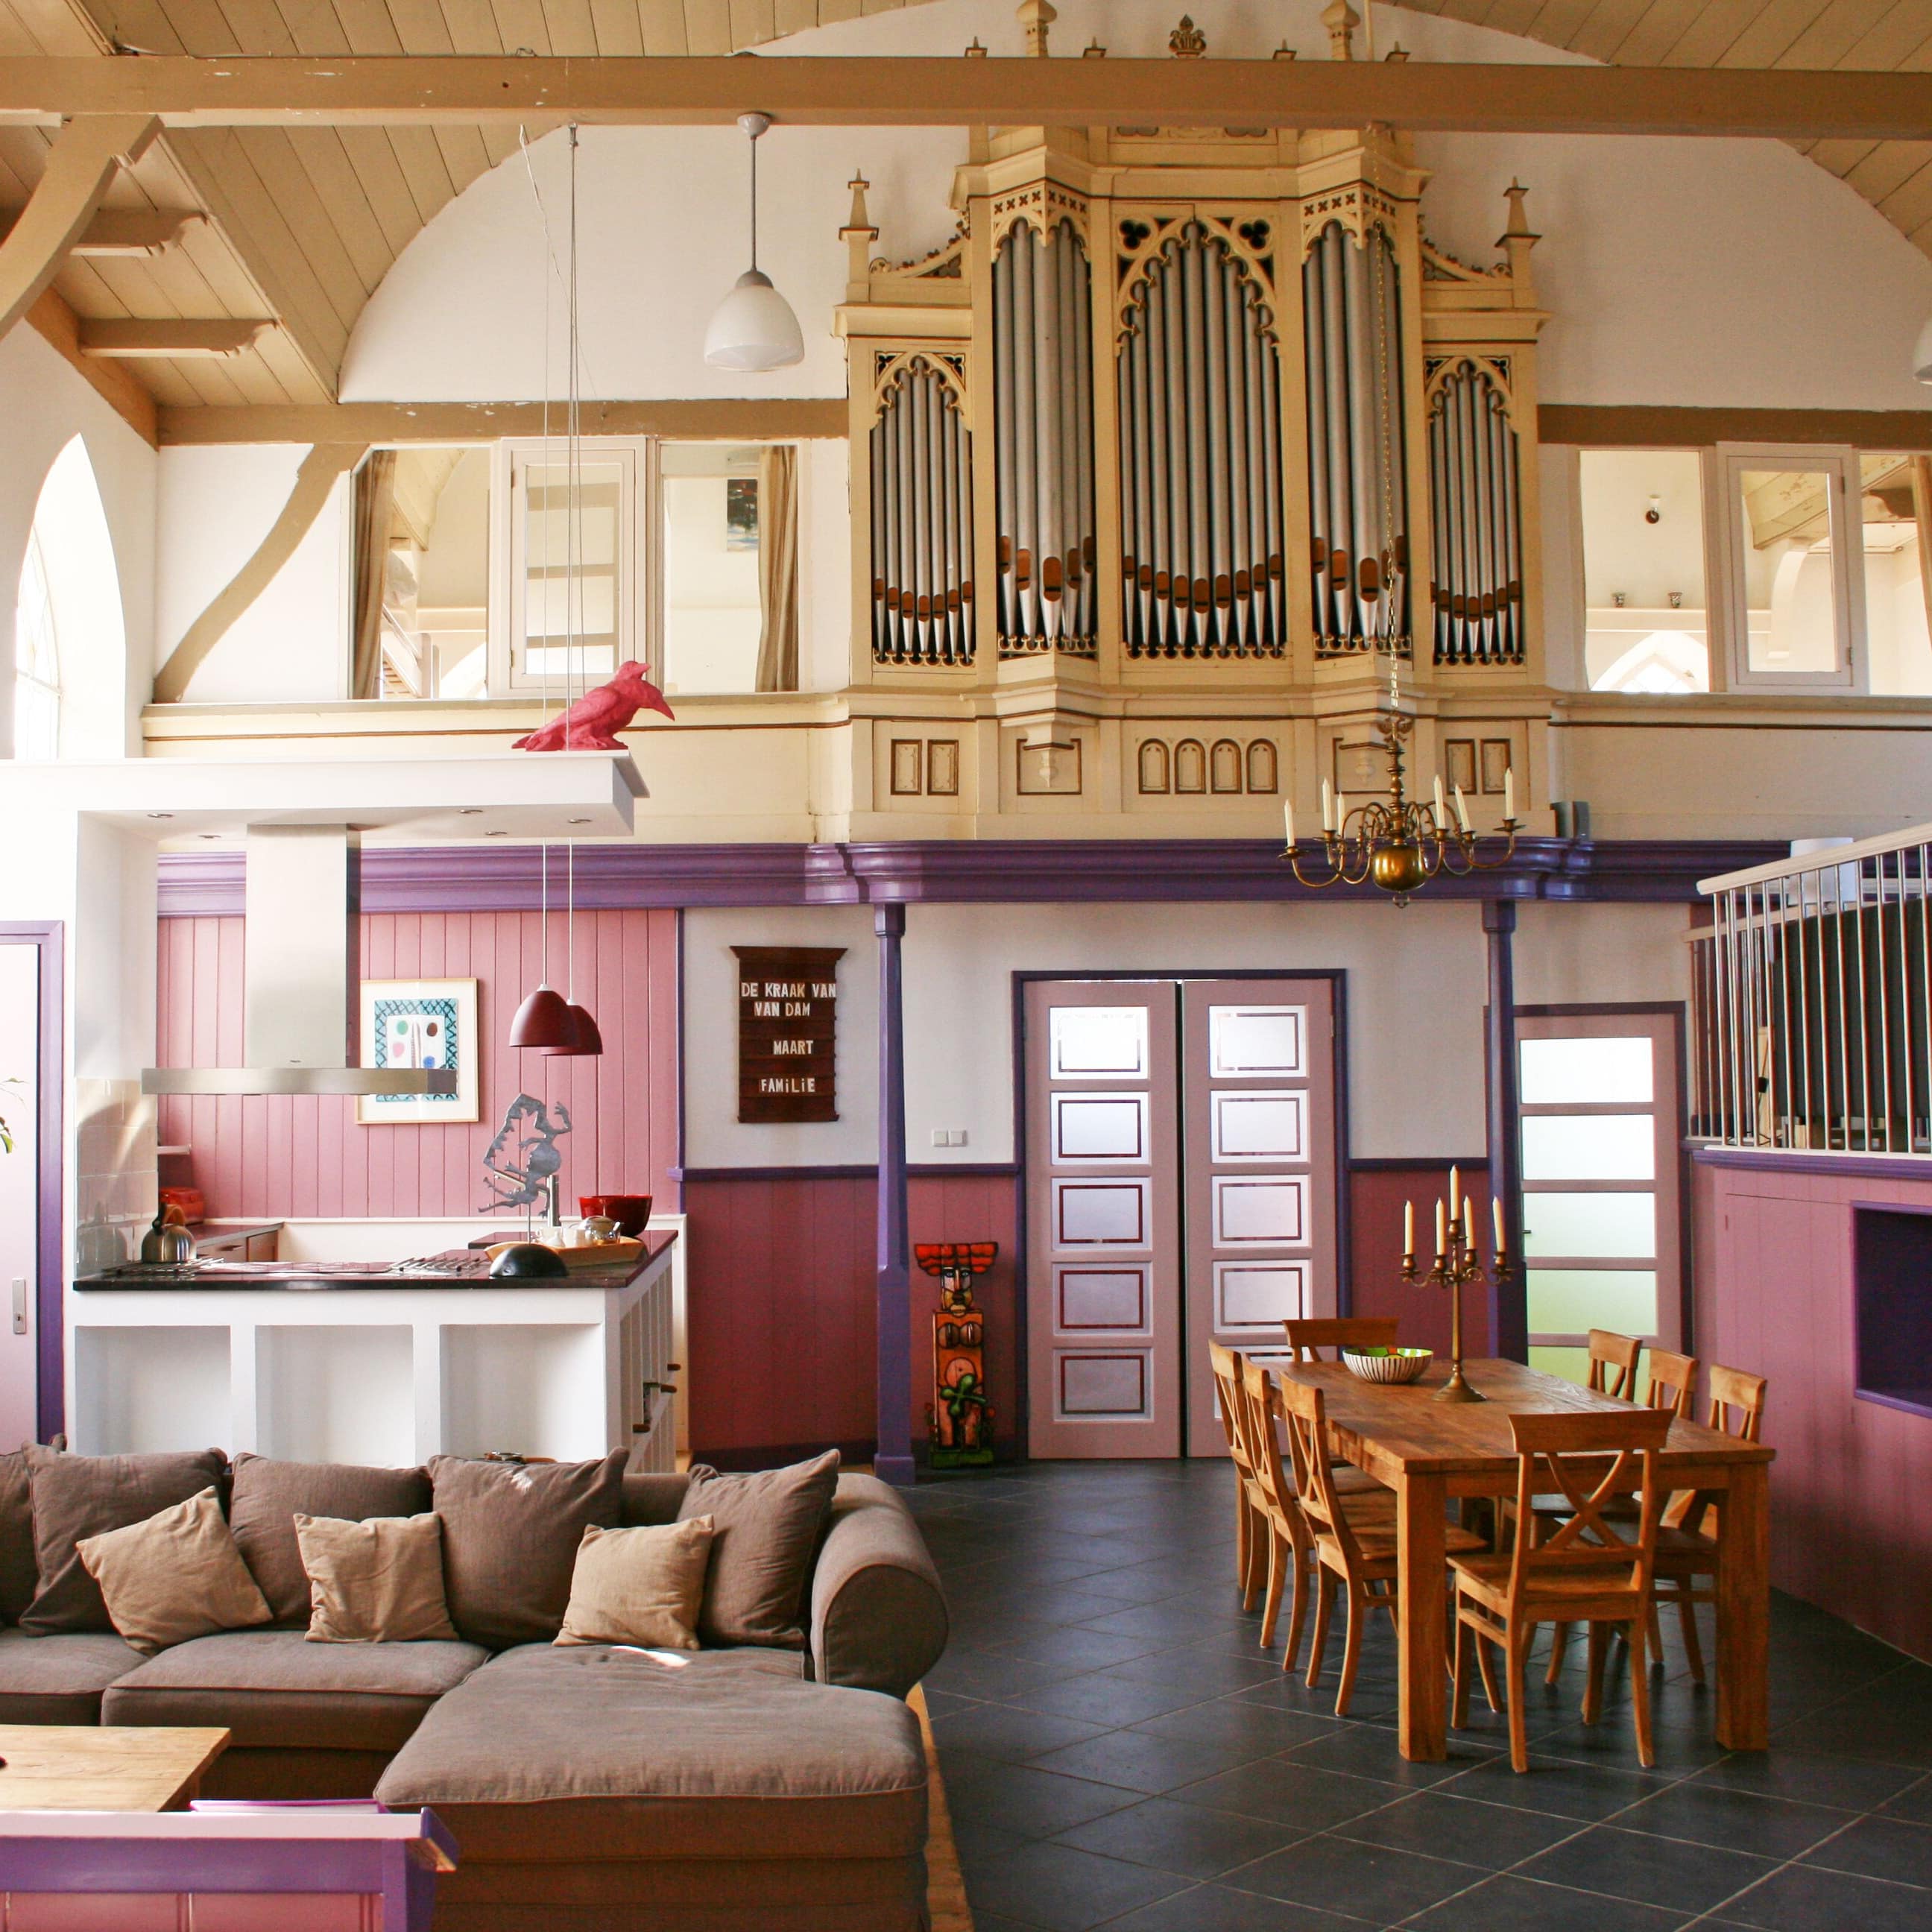 Ferienwohnung in Holland in einer umgebauten Kirche mit Orgel über dem offenen, großen Wohnraum in Pastellfarben und mit Sitzecke und Küche